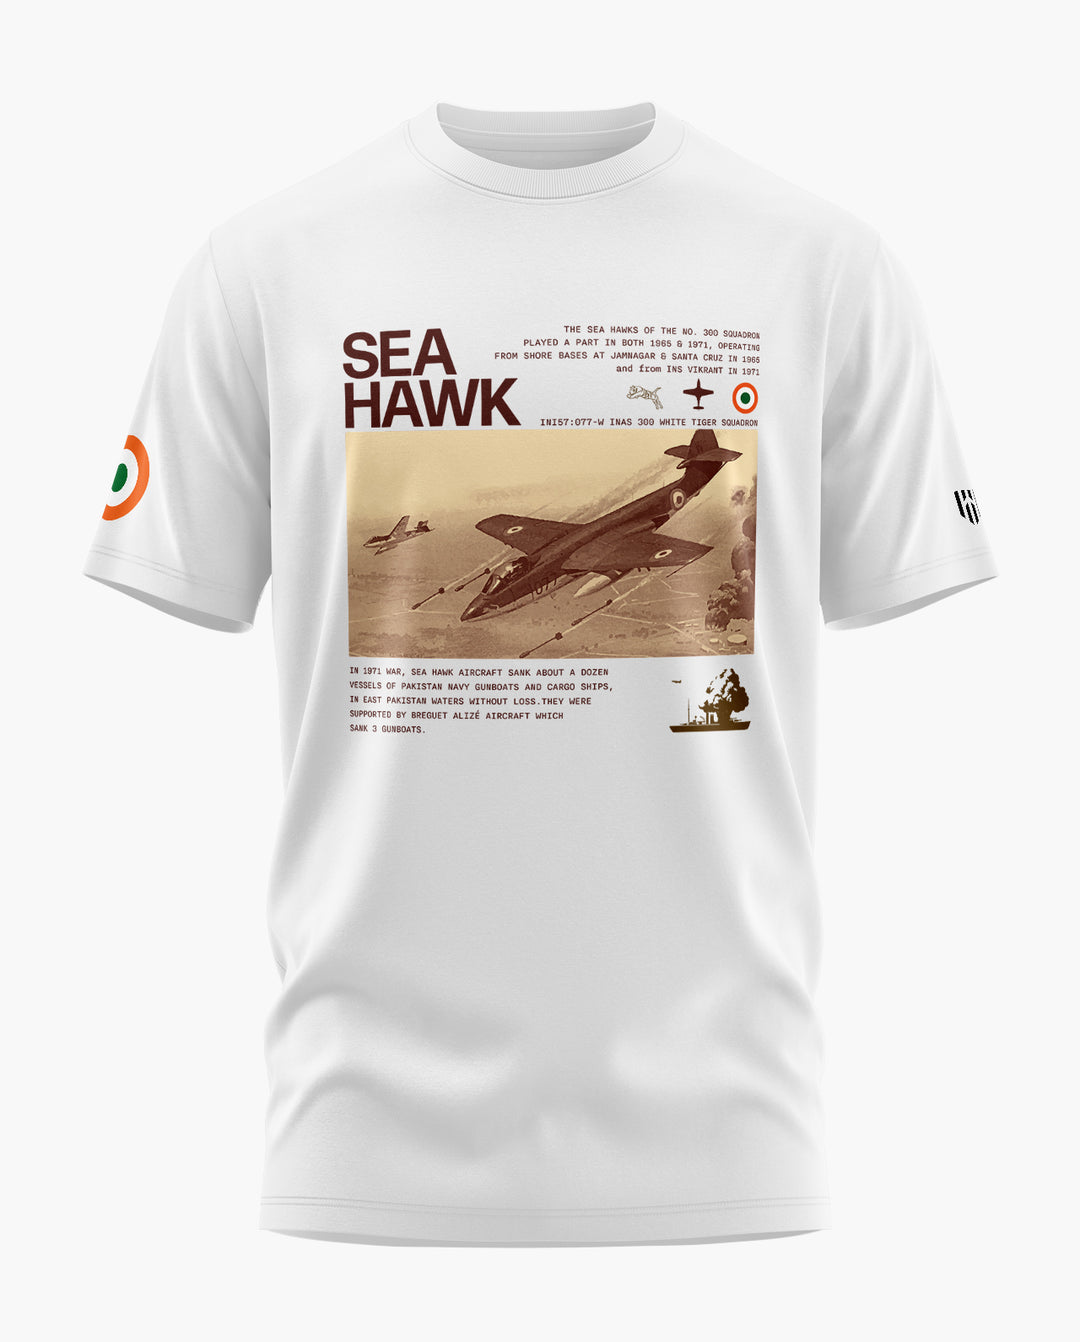 IAF SEA HAWK HERITAGE T-Shirt